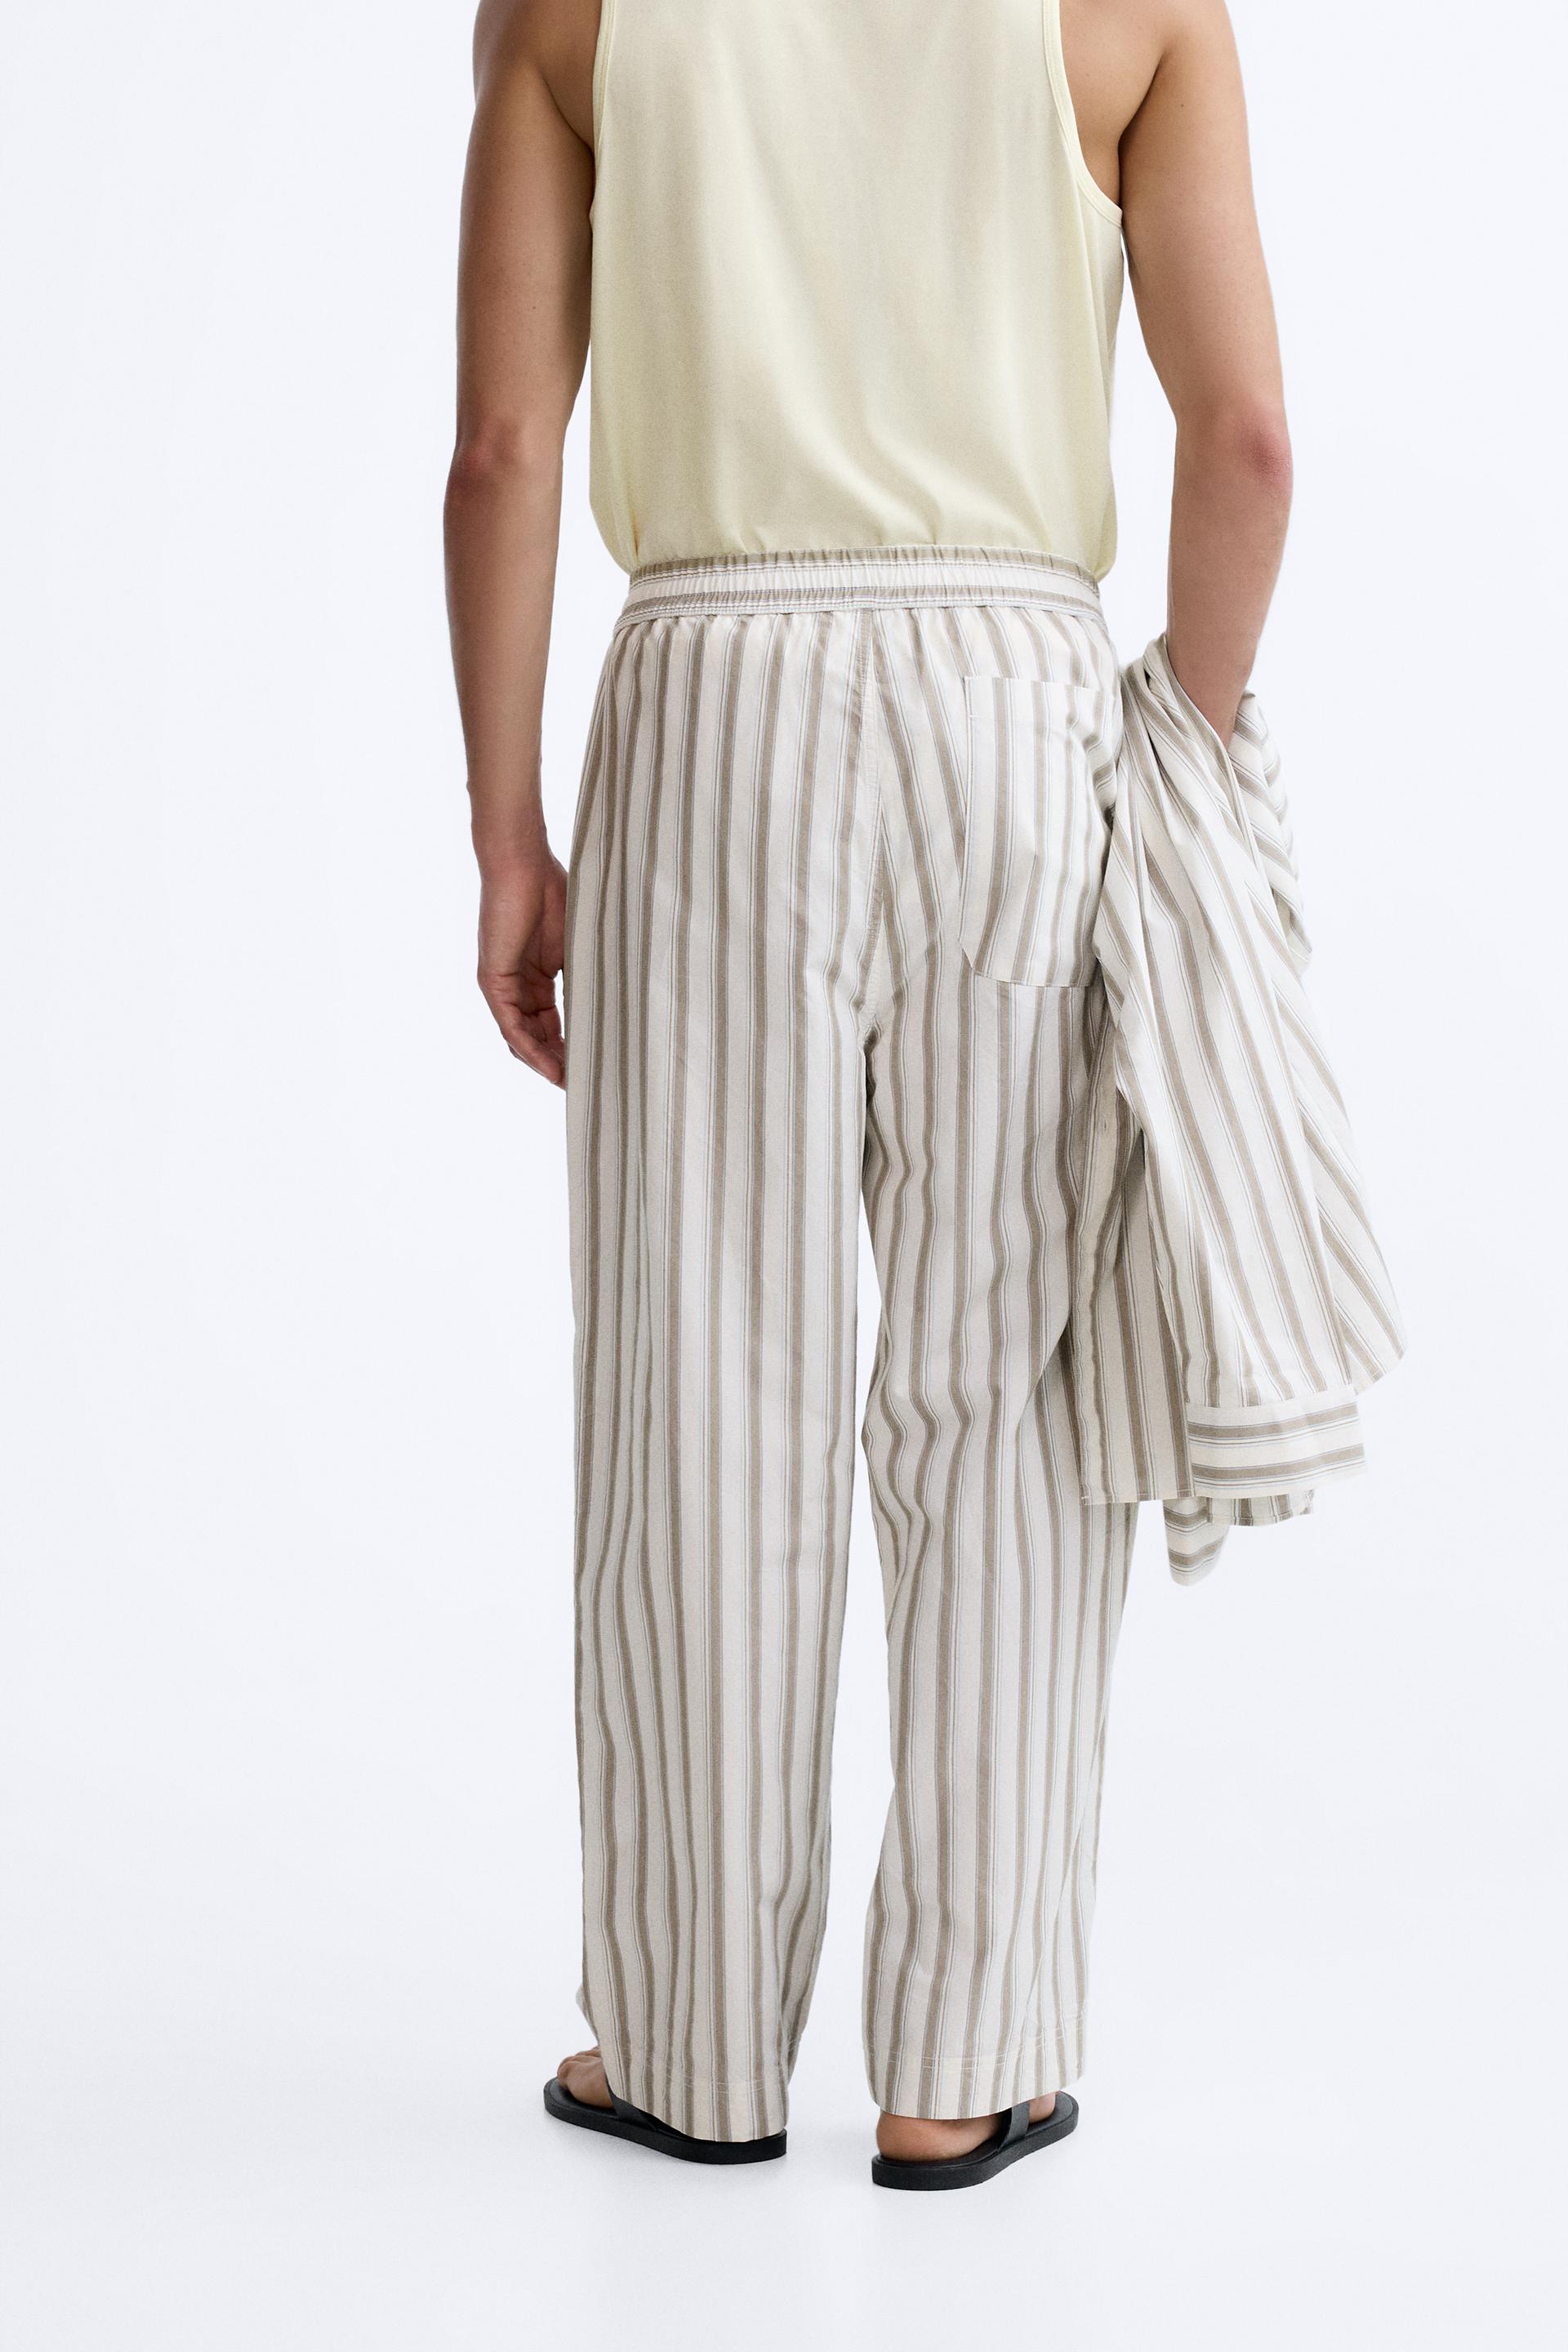 Zara tan pants stripe size 2 small